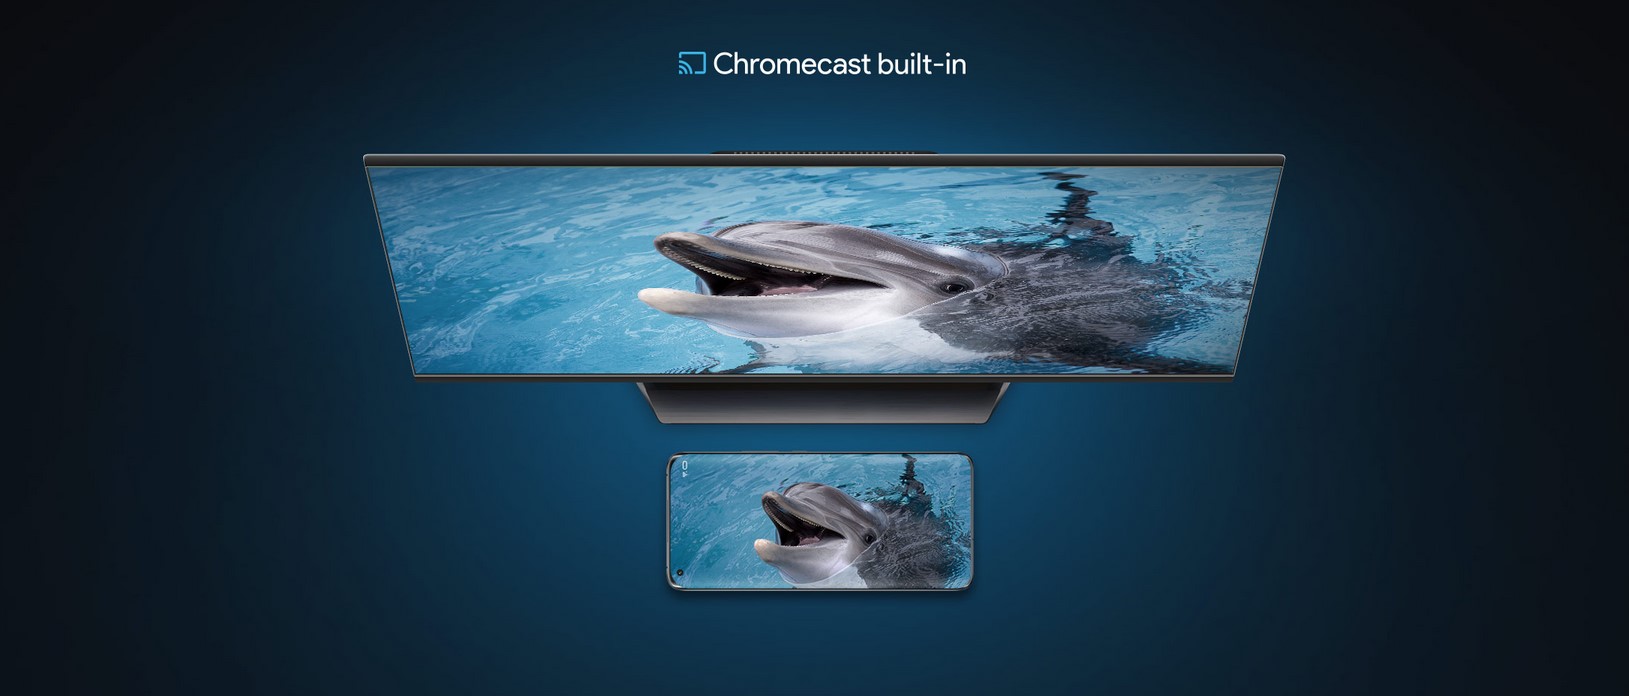 Küçük ekranınızı büyük bir ekrana taşıyın Dahili Chromecast'i* kullanarak sevdiğiniz içeriği telefonunuzdan, tabletinizden veya dizüstü bilgisayarınızdan TV'nize aktarın.